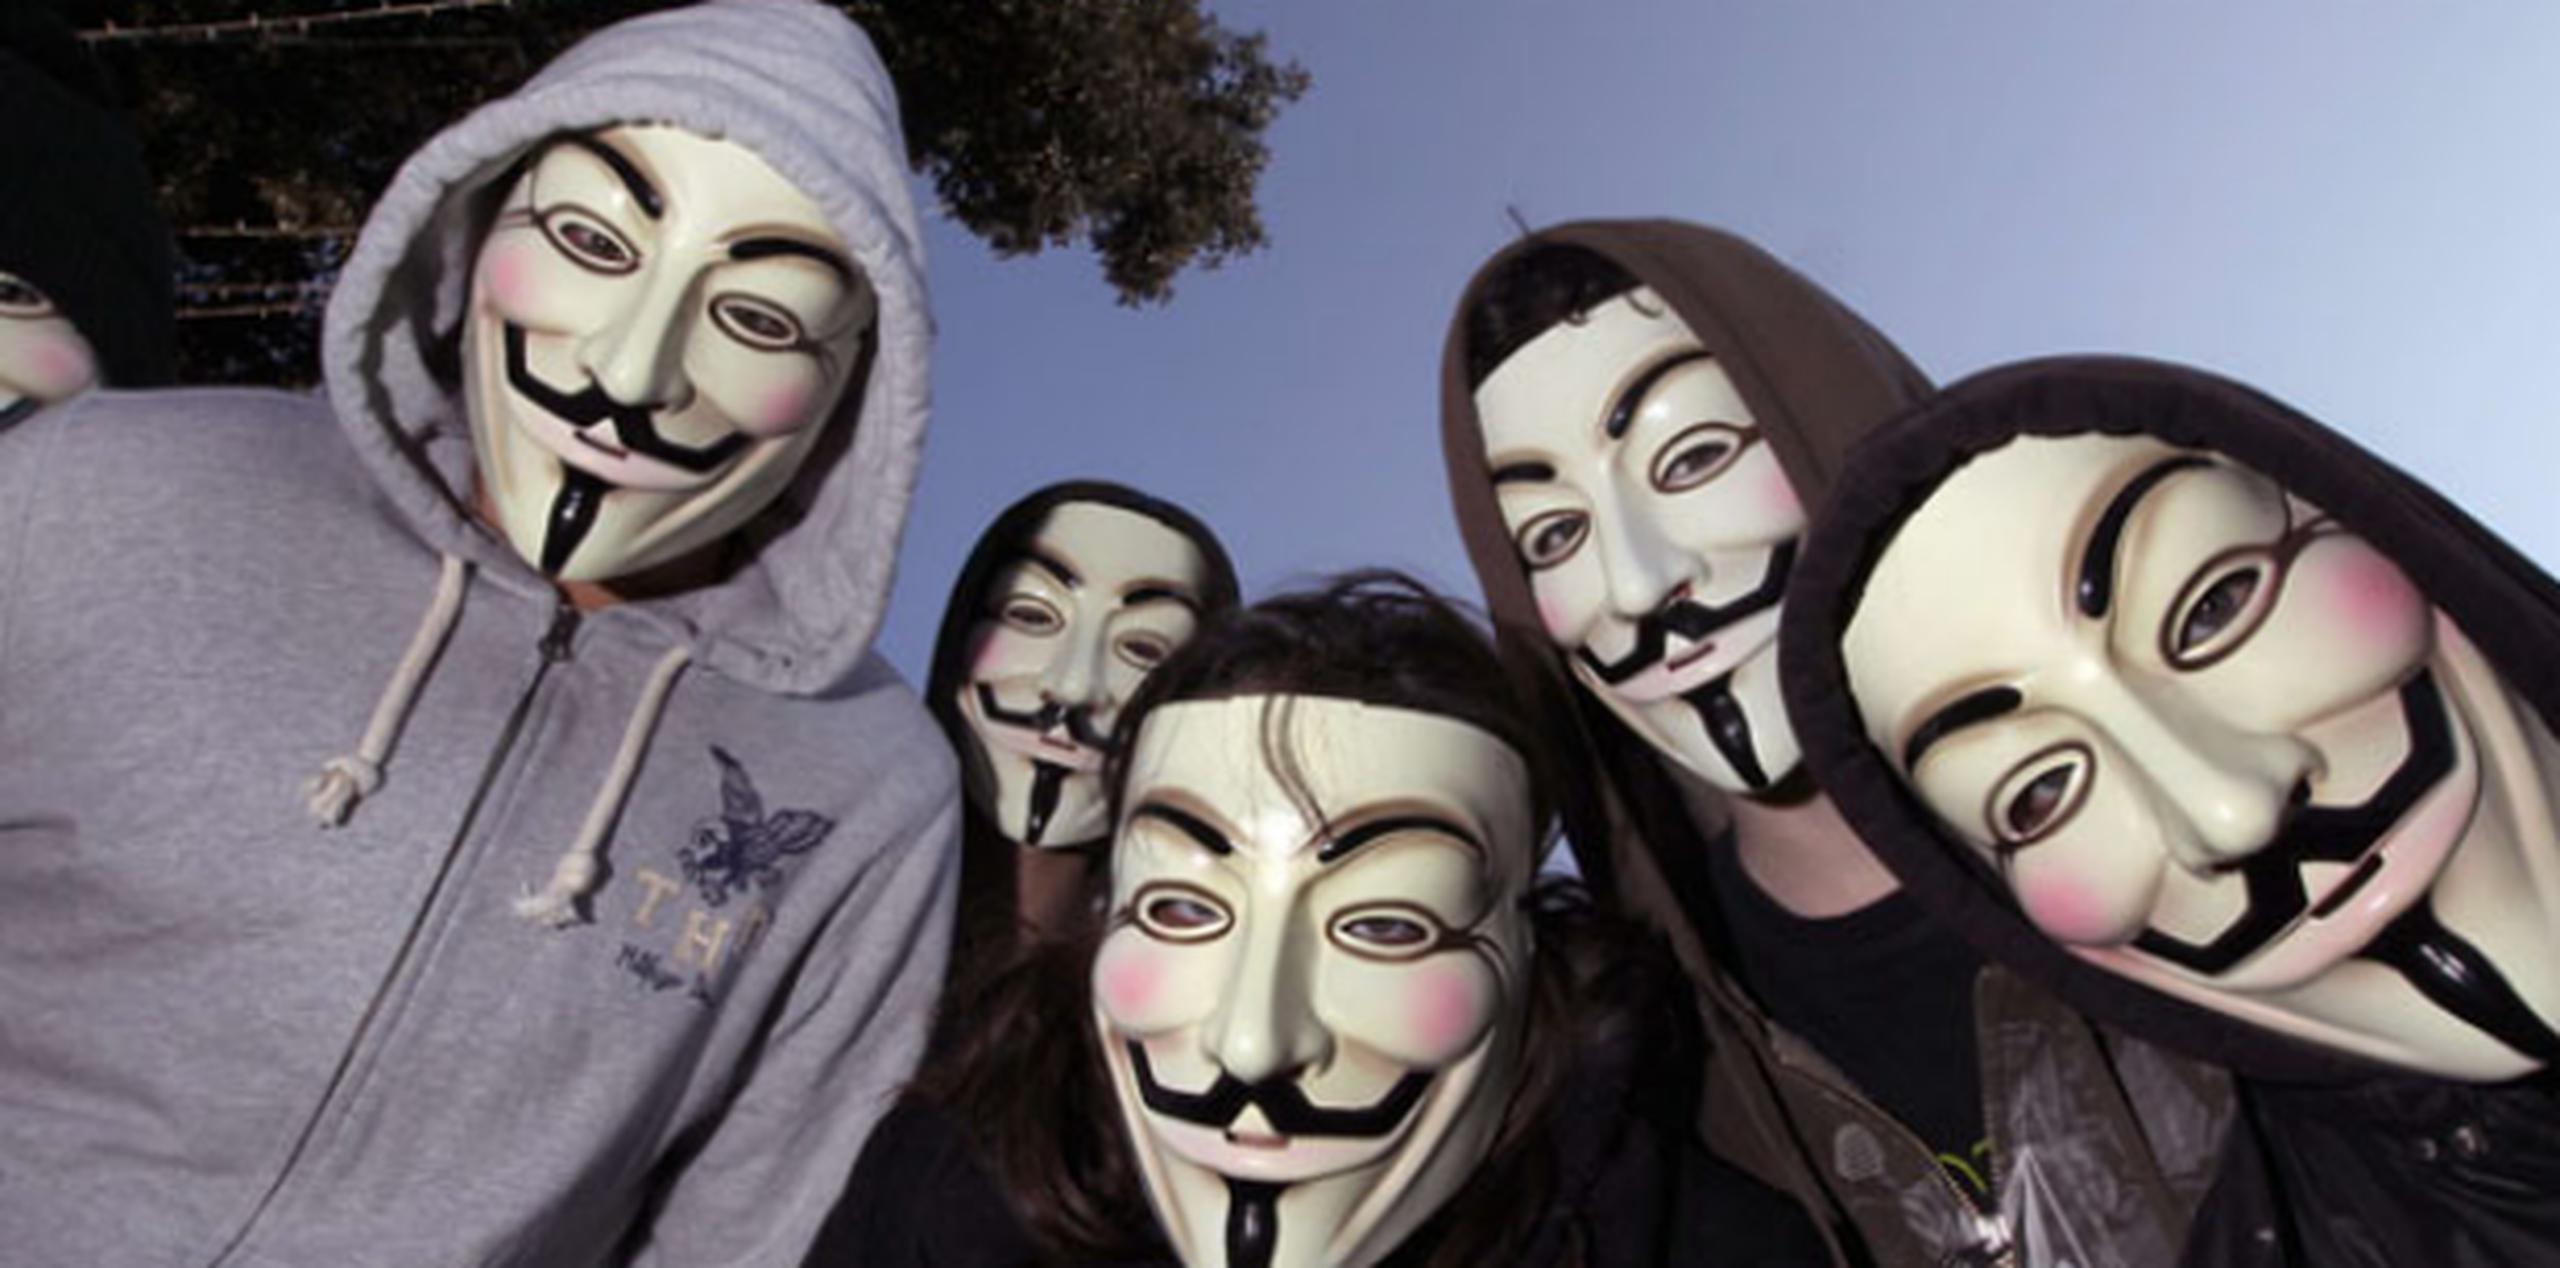 Anonymous Indonesia se ha adjudicado anteriormente haber intervenido en más de 150 portales australianos para protestar contra denuncias vinculadas al supuesto espionaje desde la Embajada australiana en Yakarta.  (AFP/VALERY HACHE)